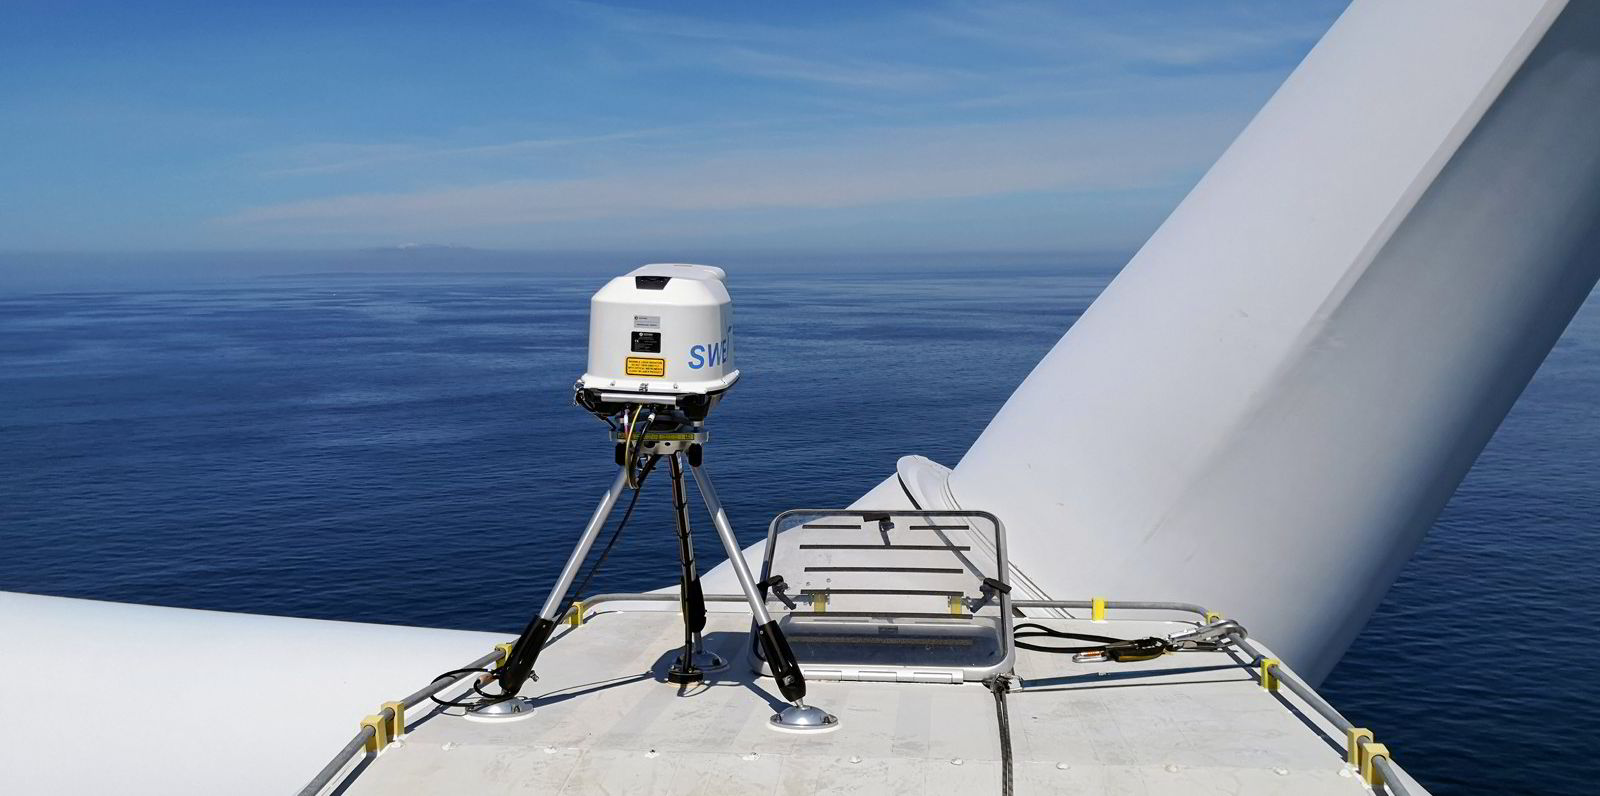 Laser focus: wind-reading laser technology installed on floating